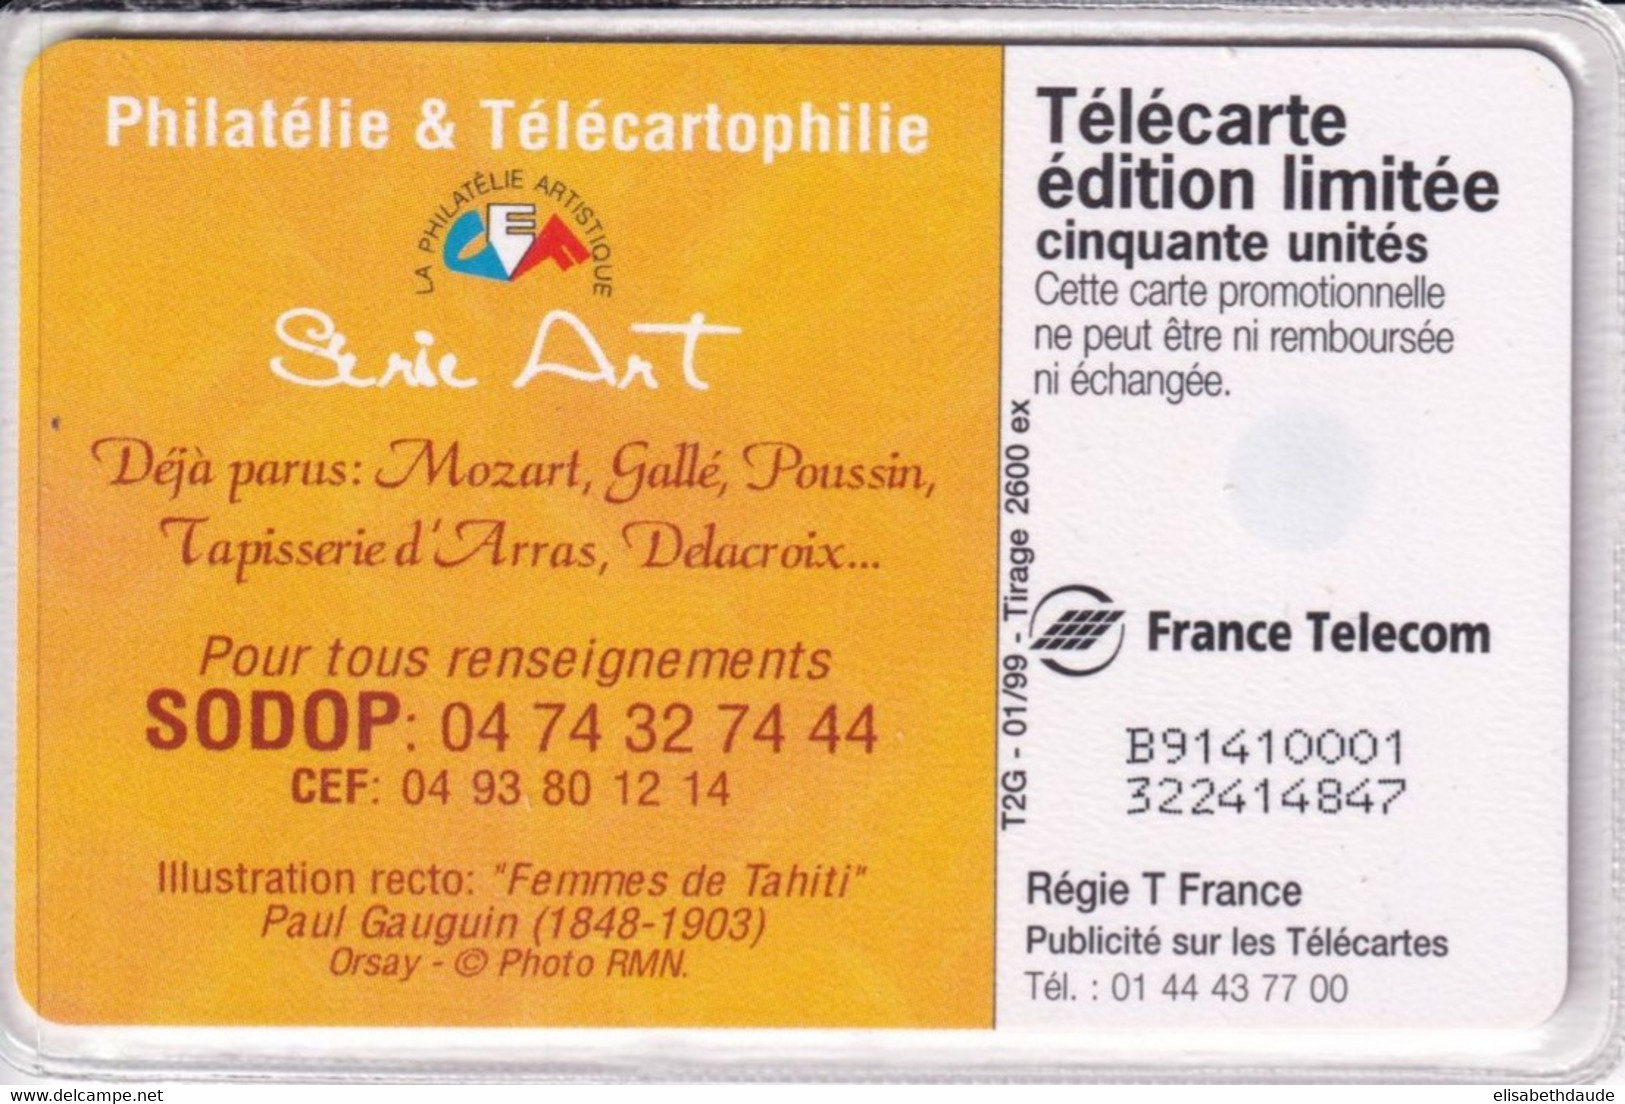 1999 - TELECARTE 50 T2G - TIRAGE 2600 EX. NEUVE - GAUGUIN "FEMMES DE TAHITI" - Peinture